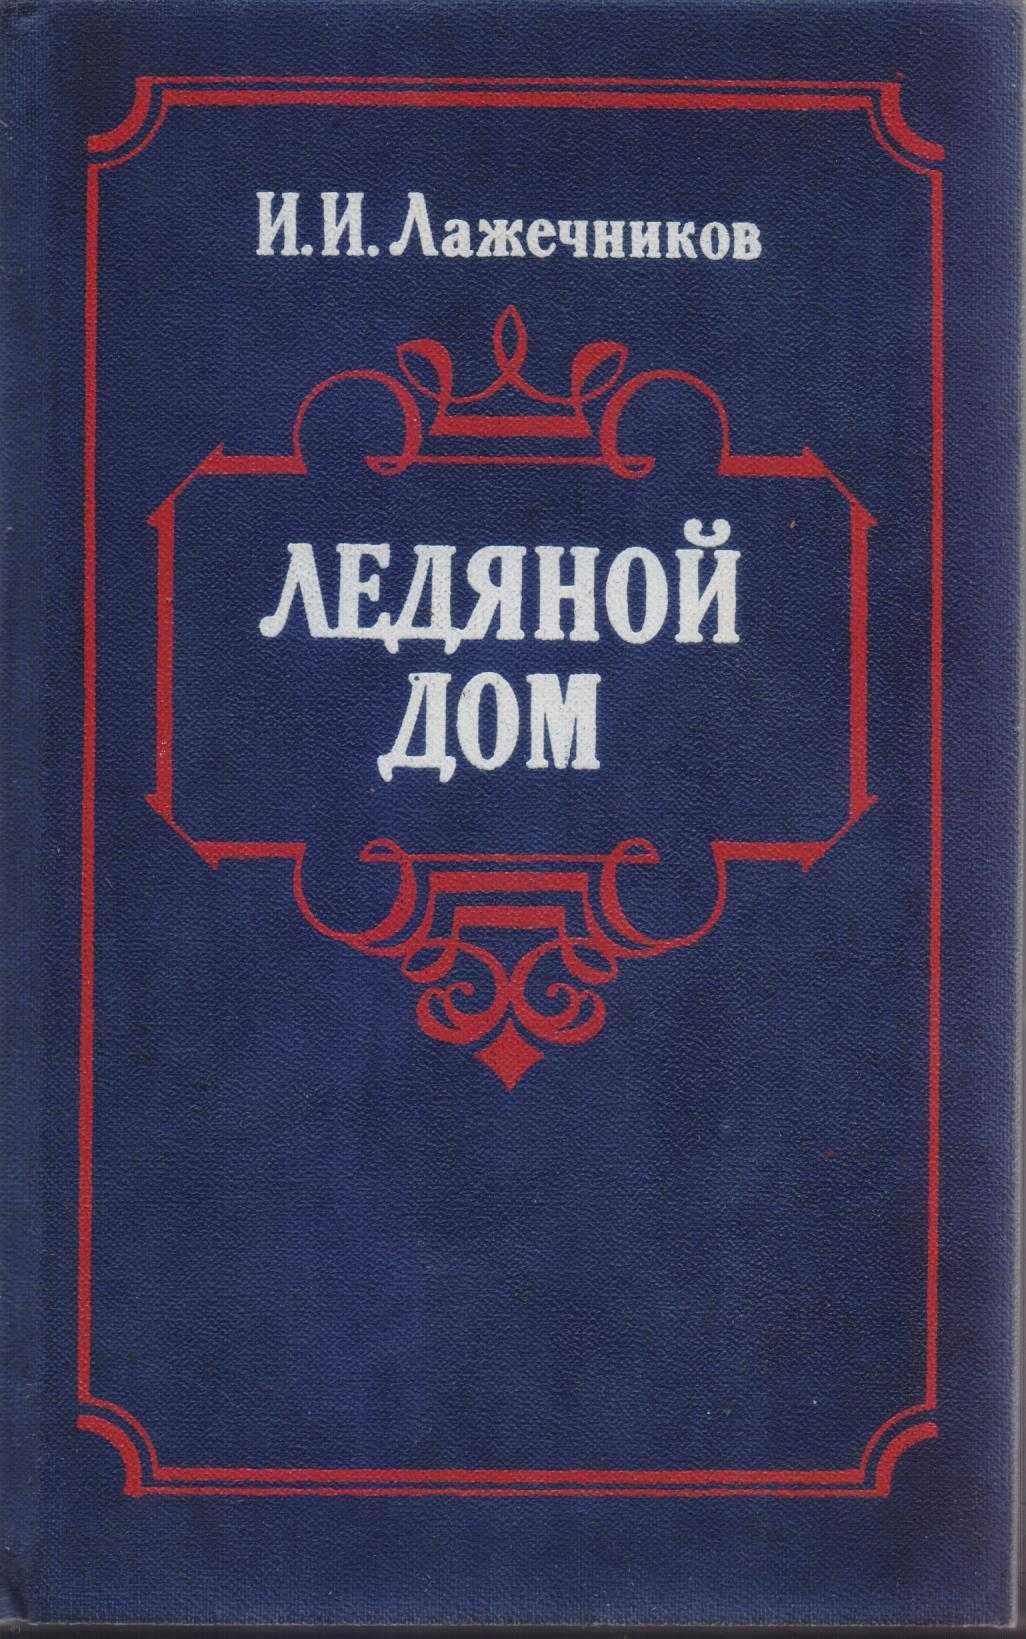 Исторические советские романы (более 30 книг), Булгаков, Пастернак